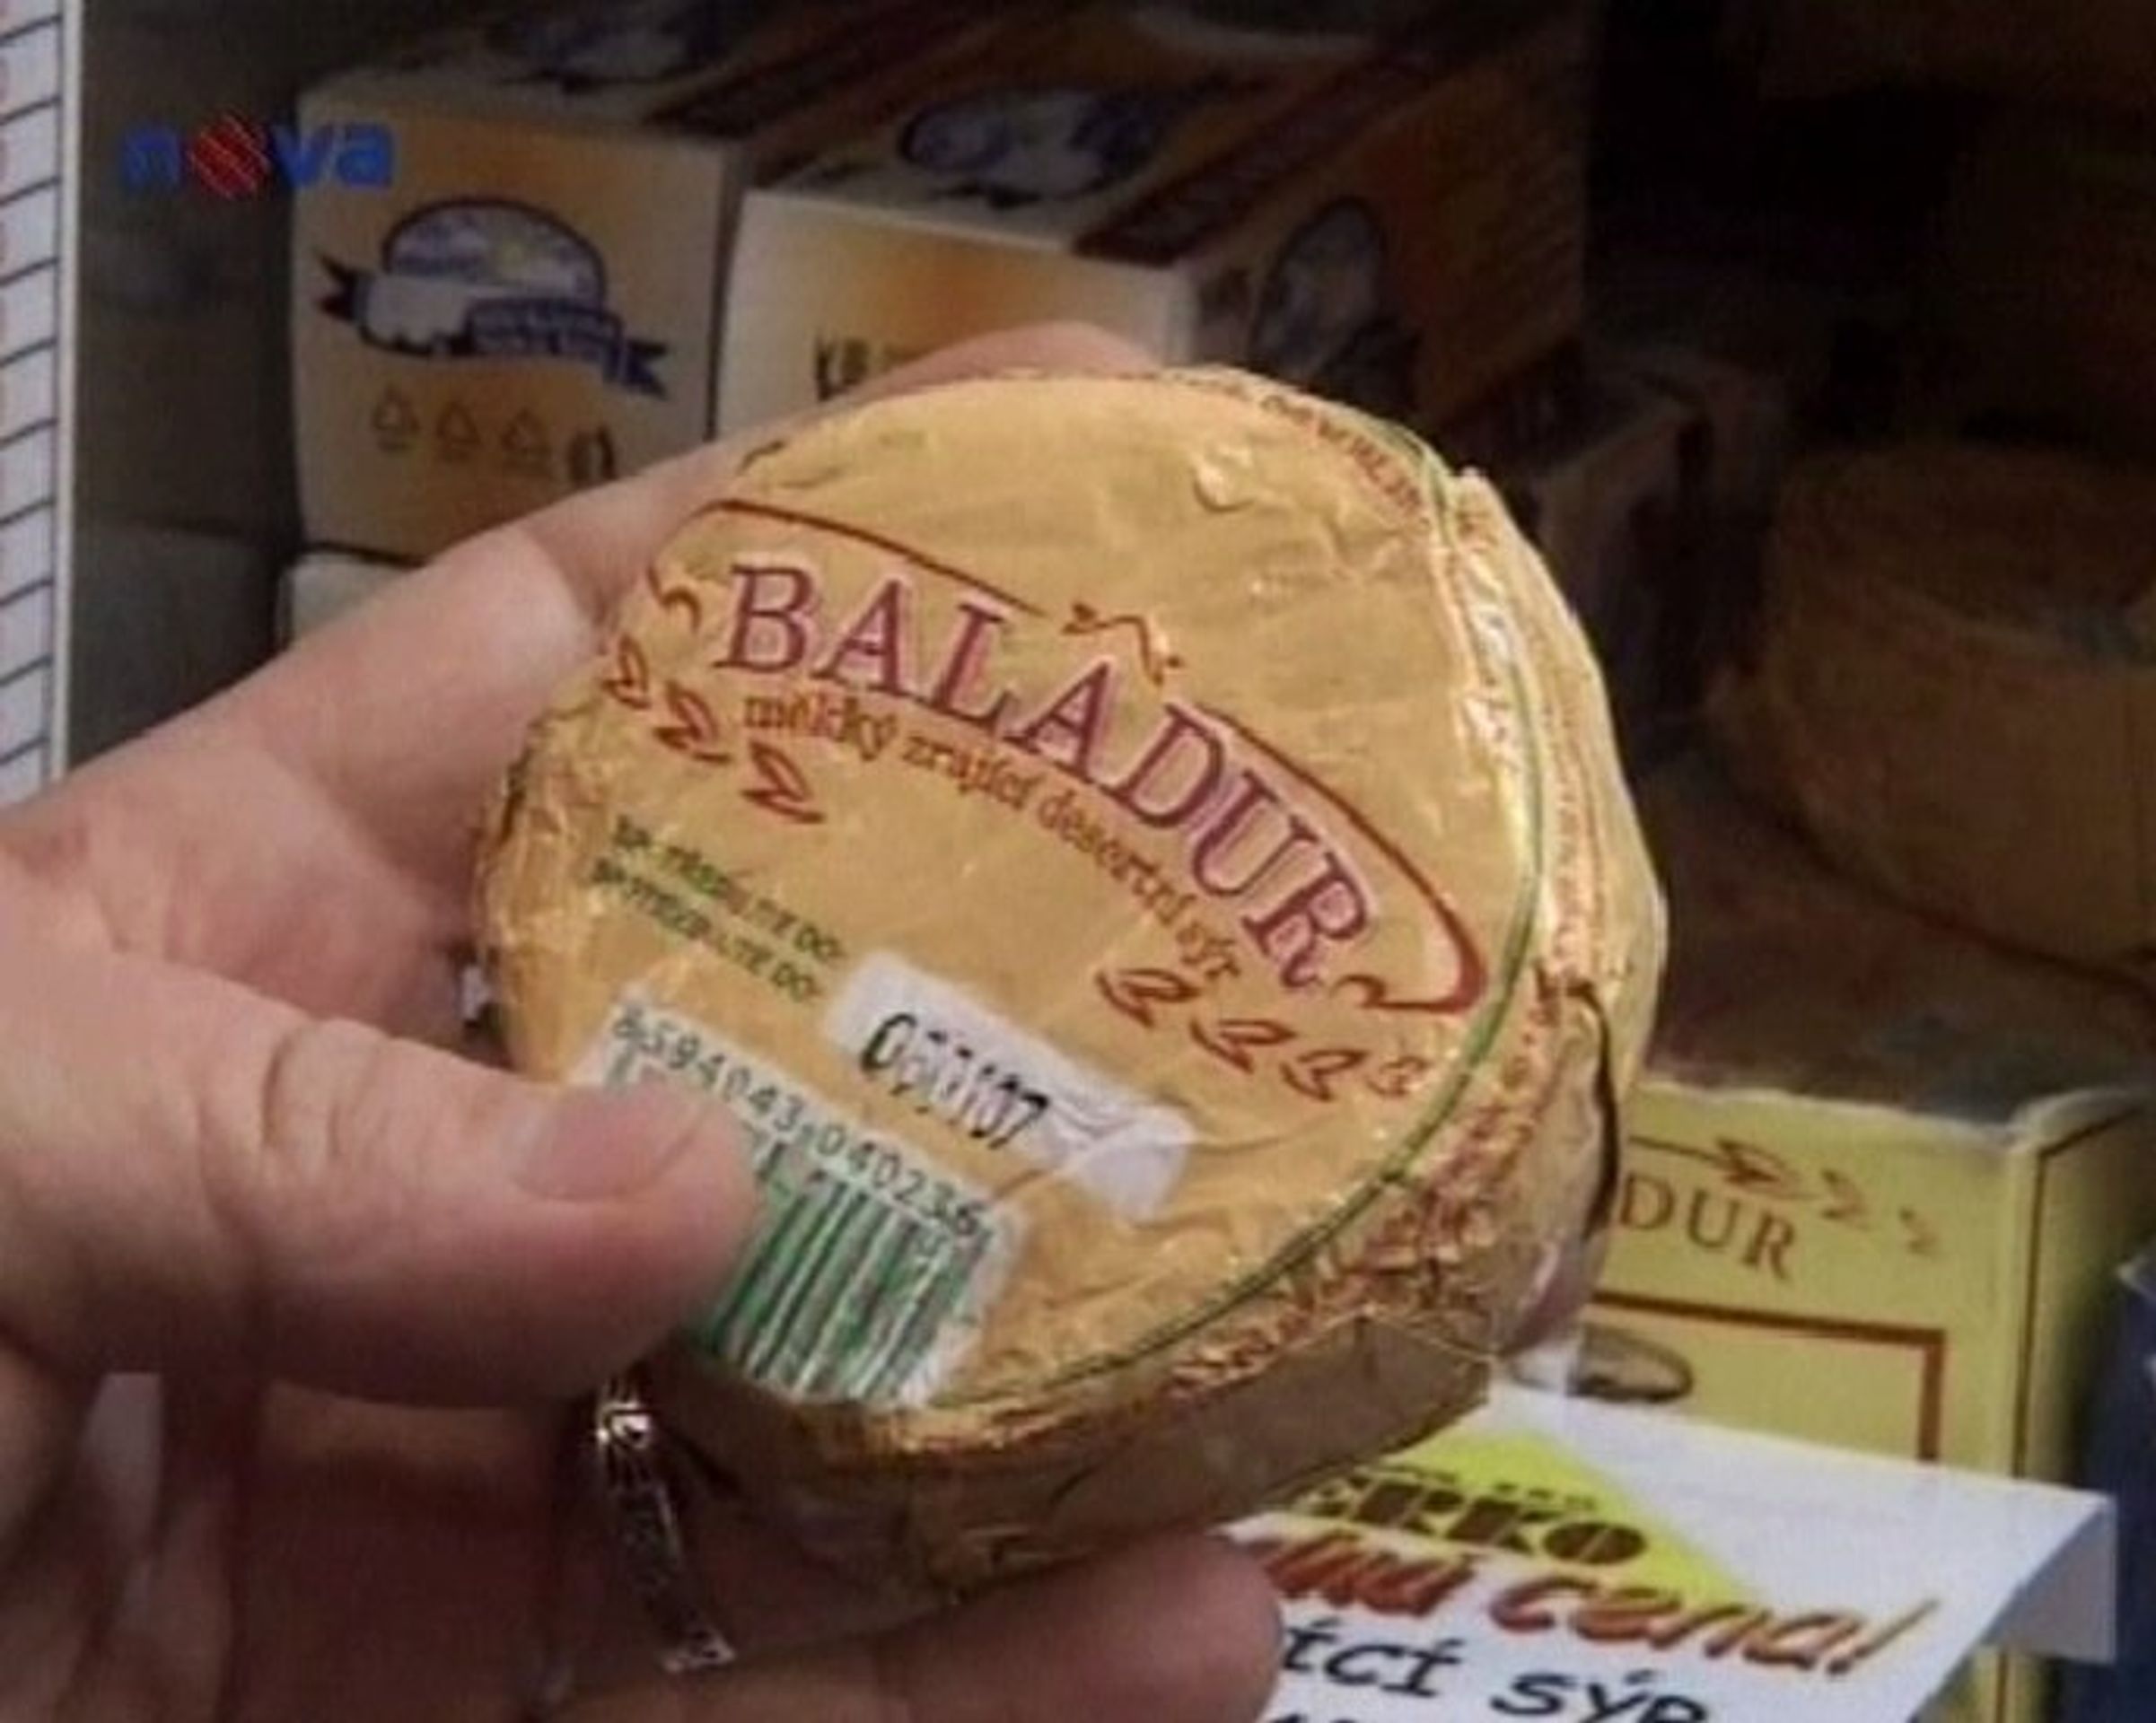 Nebezpečný sýr  - ČR: Listerióza způsobila masivní kontroly potravin (1/3)